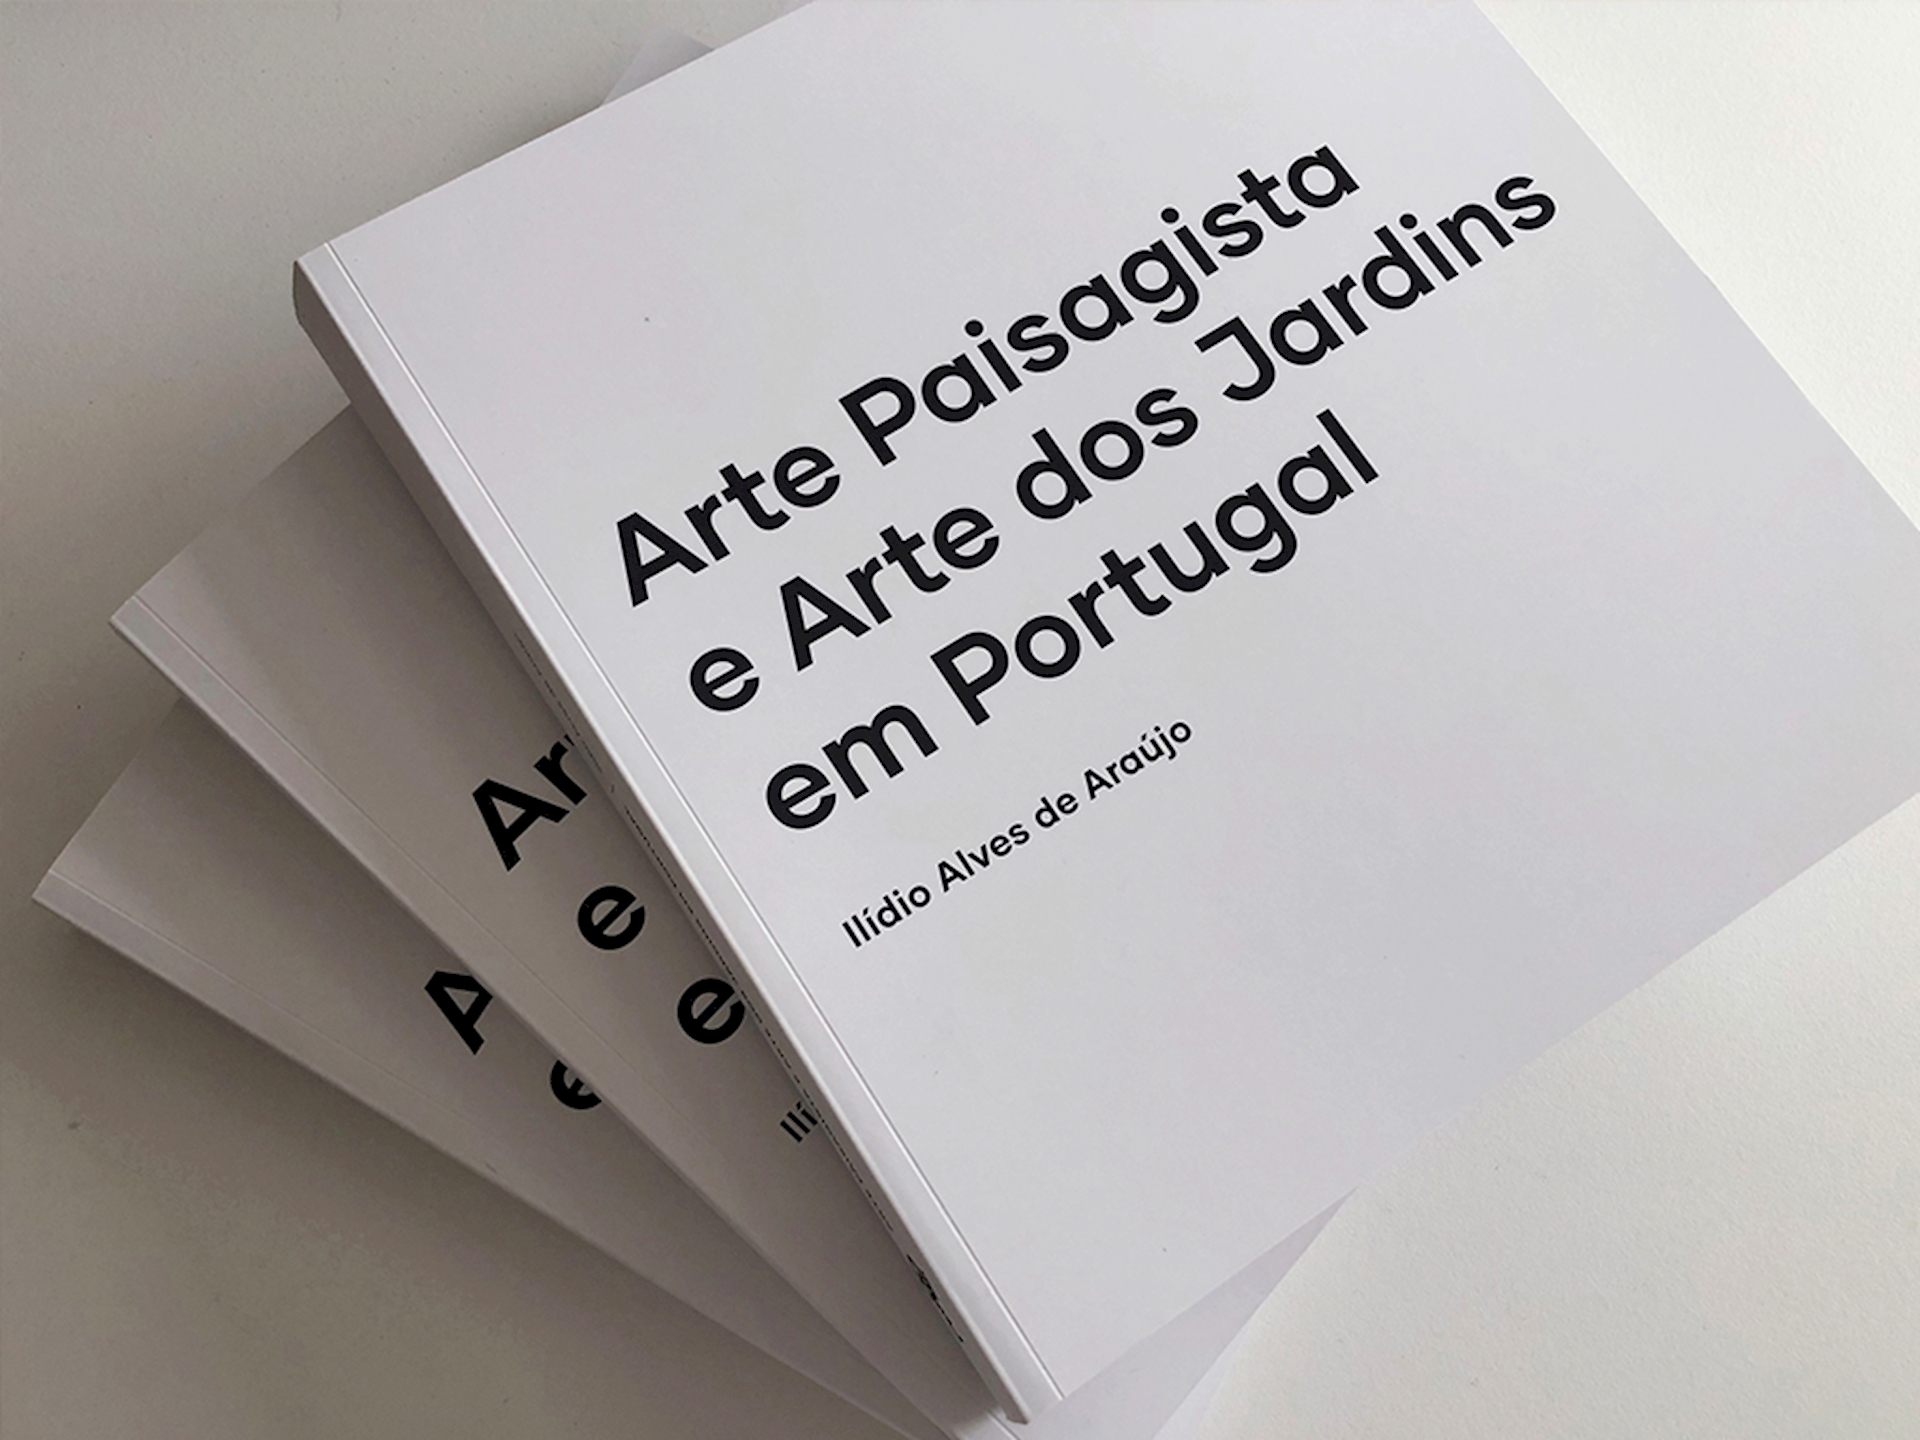 APRESENTAÇÃO DE "ARTE PAISAGISTA E ARTE DOS JARDINS EM PORTUGAL"